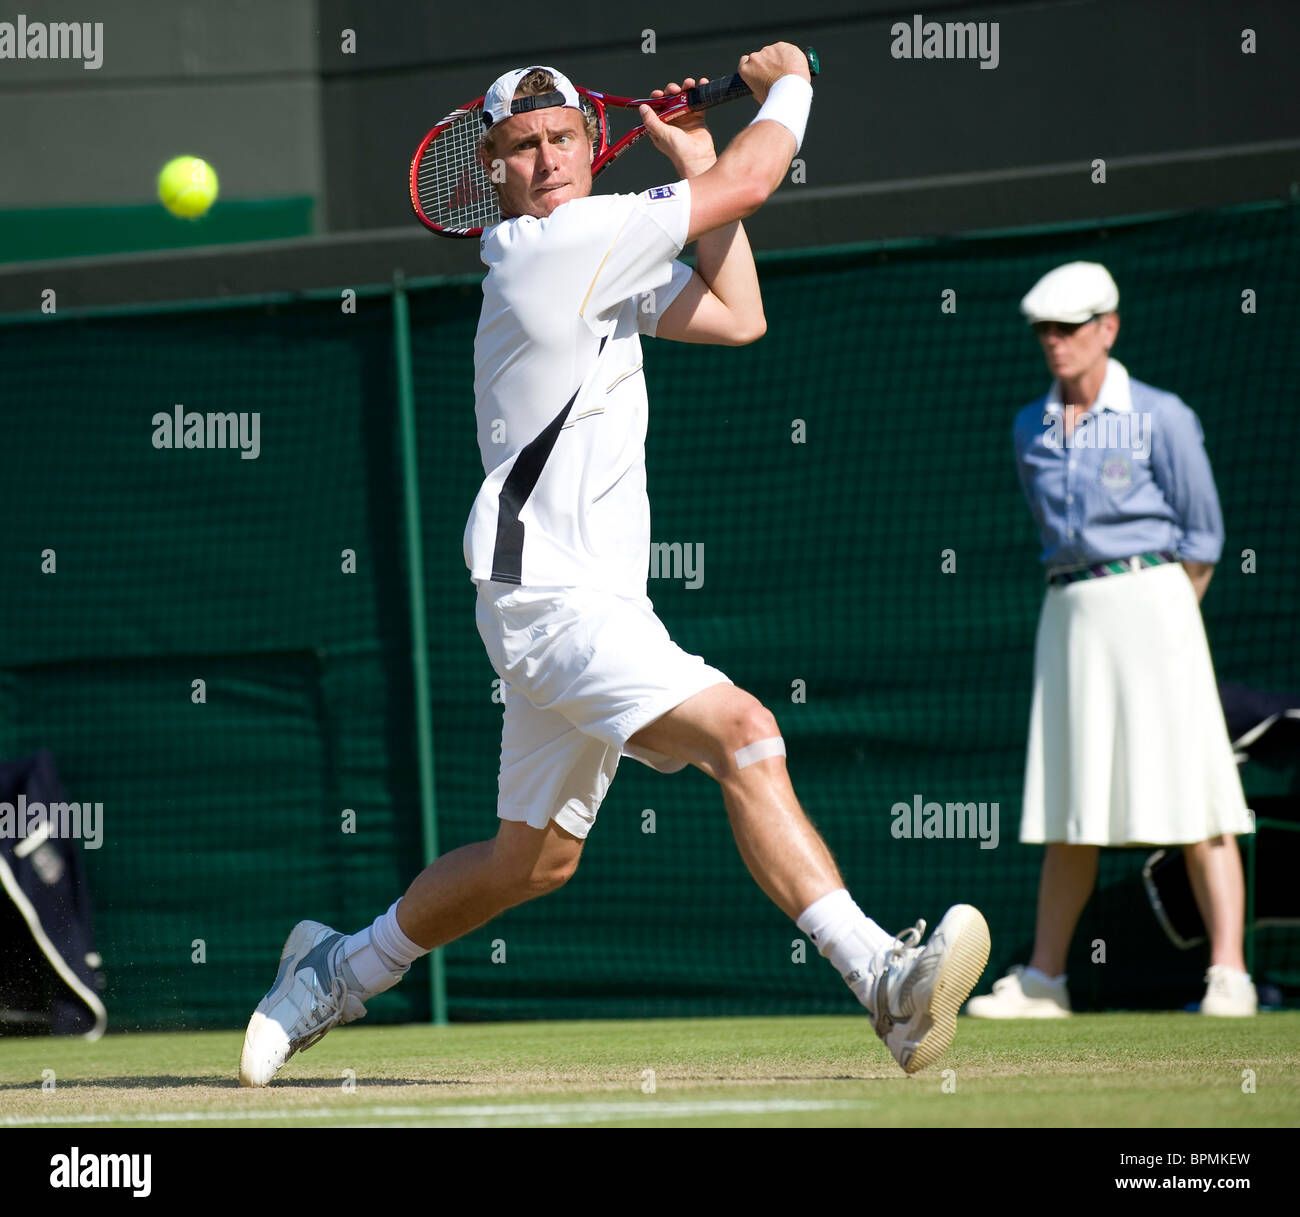 Lleyton Hewitt (AUS) en action au cours de la Tennis de Wimbledon 2010 Banque D'Images